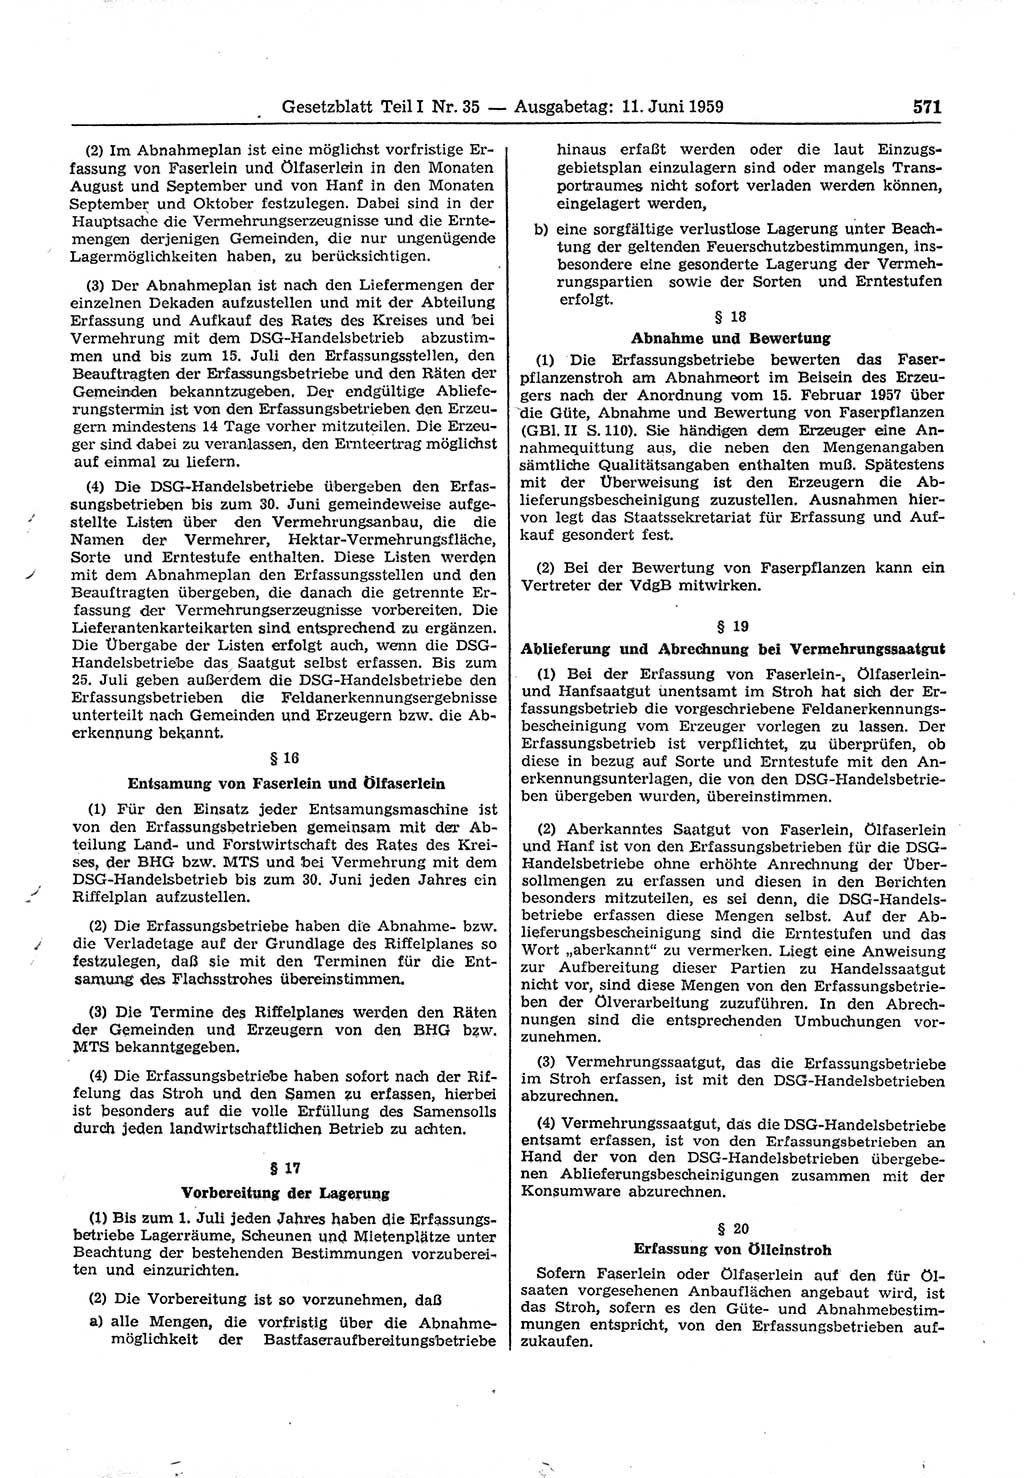 Gesetzblatt (GBl.) der Deutschen Demokratischen Republik (DDR) Teil Ⅰ 1959, Seite 571 (GBl. DDR Ⅰ 1959, S. 571)